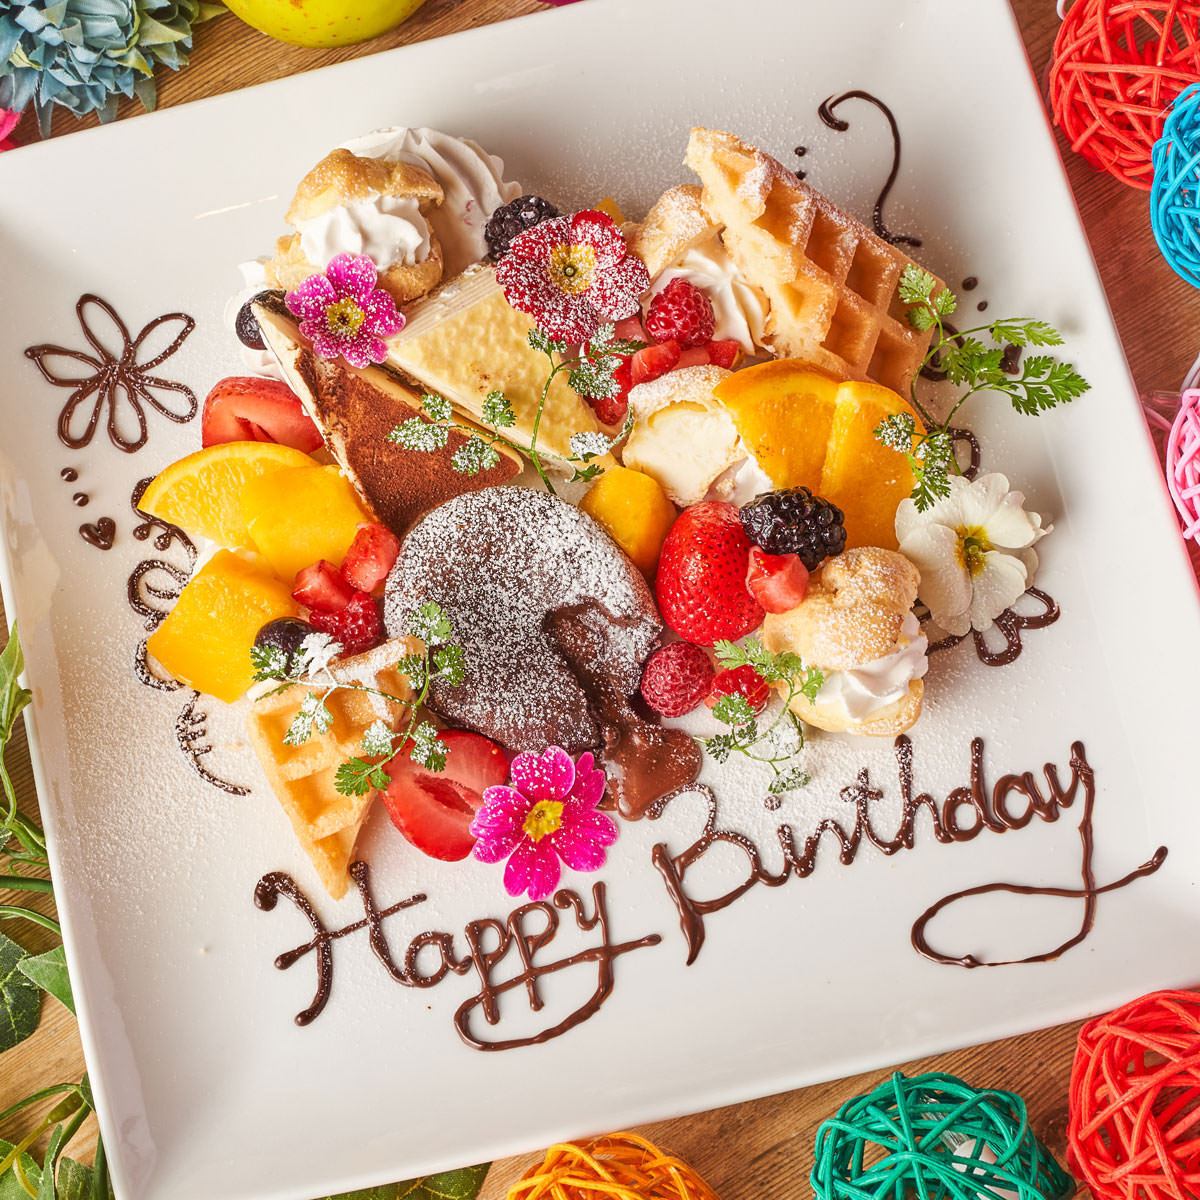 我们提供非常适合庆祝生日和周年纪念日的甜点盘。